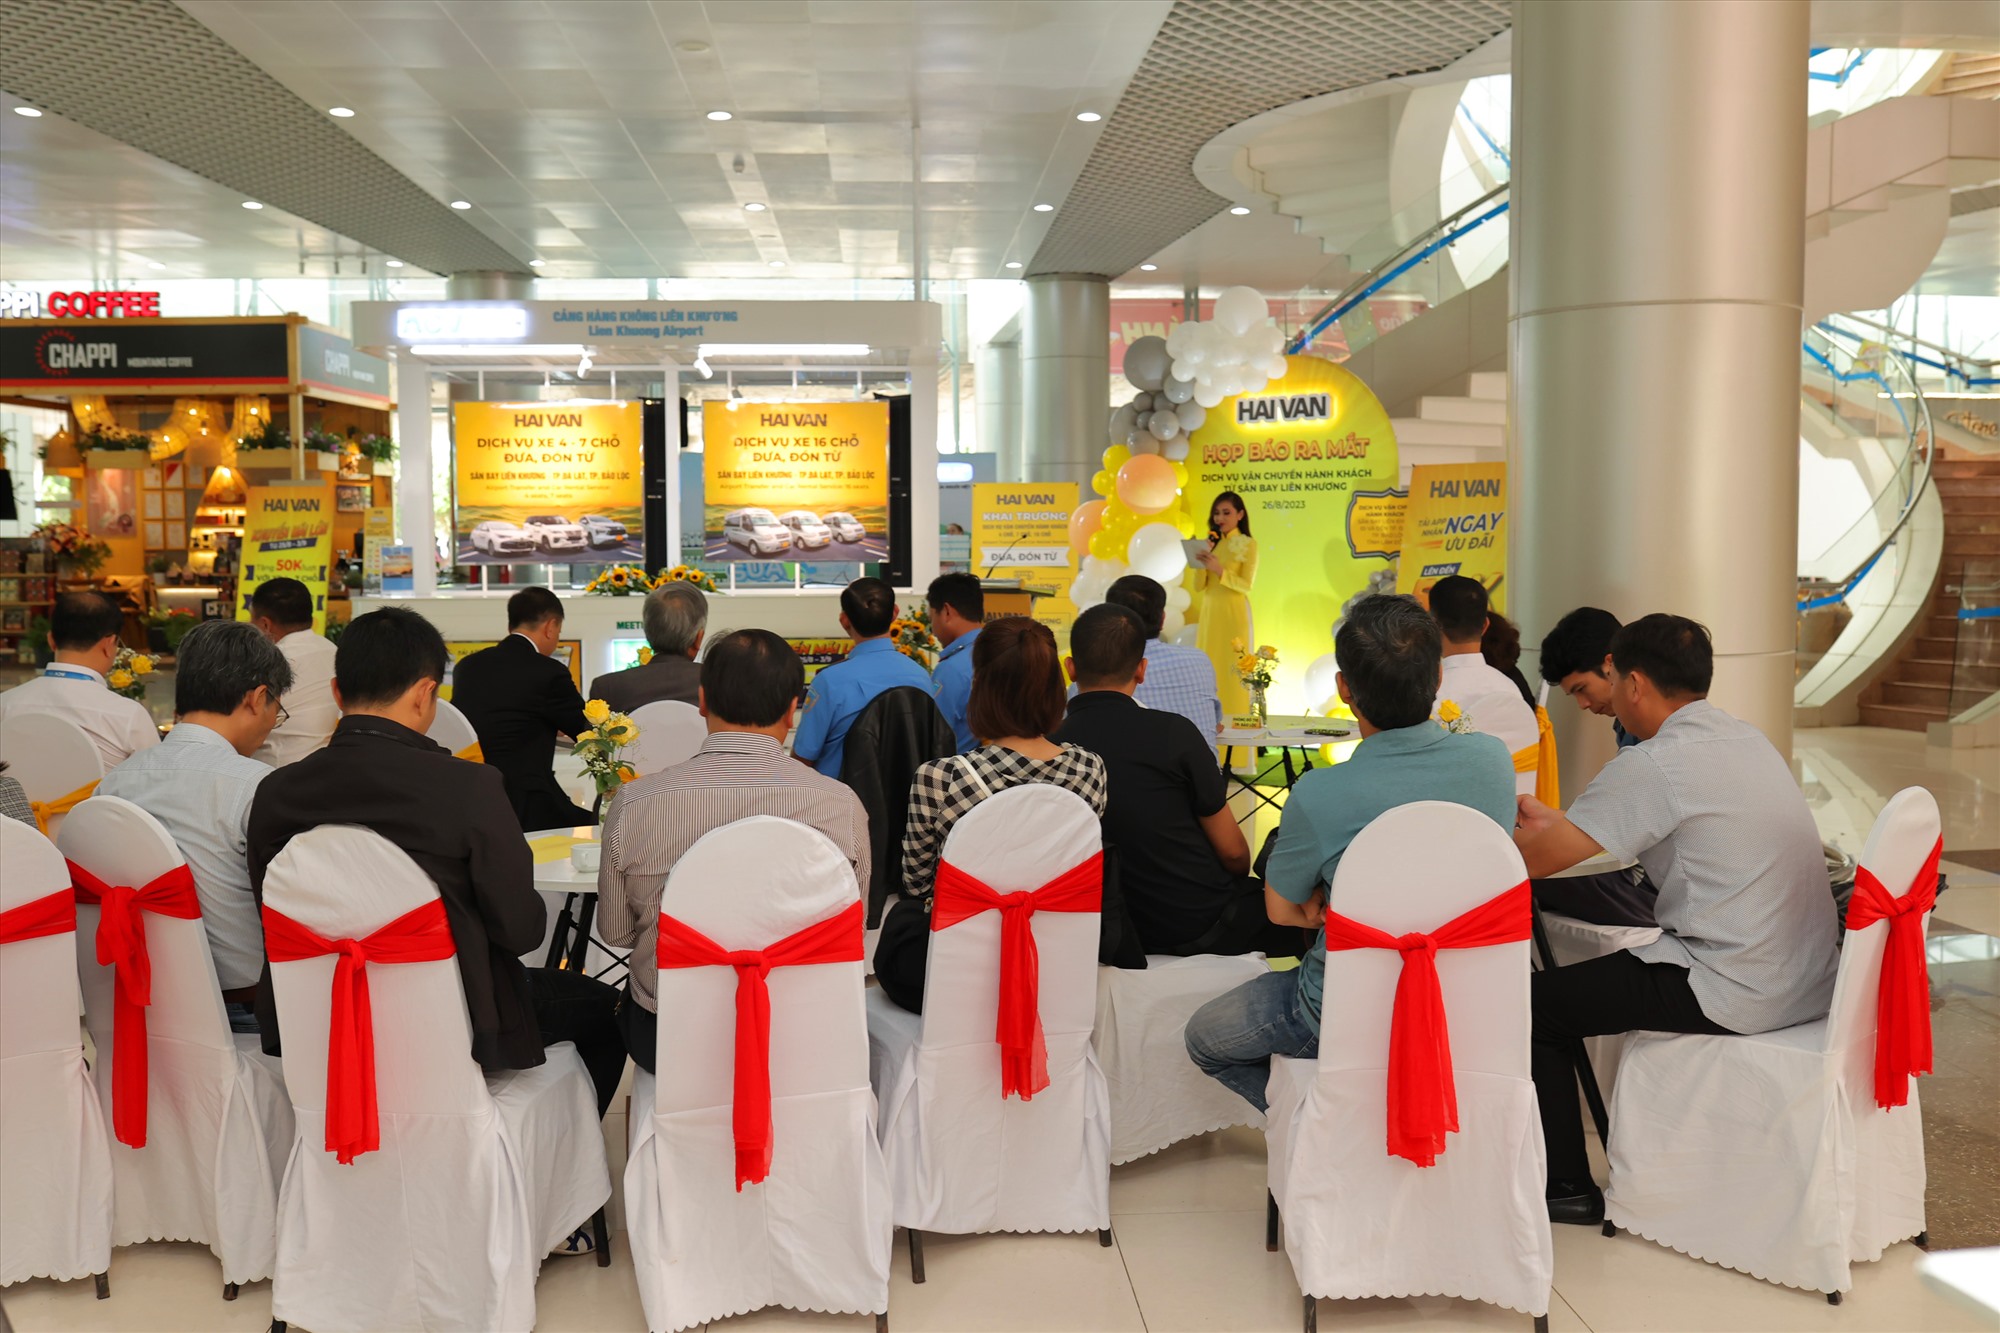 Dịch vụ xe khách 5 sao sẽ chính thức được triển khai ở Lâm Đồng. Ảnh: Tiến Nguyễn